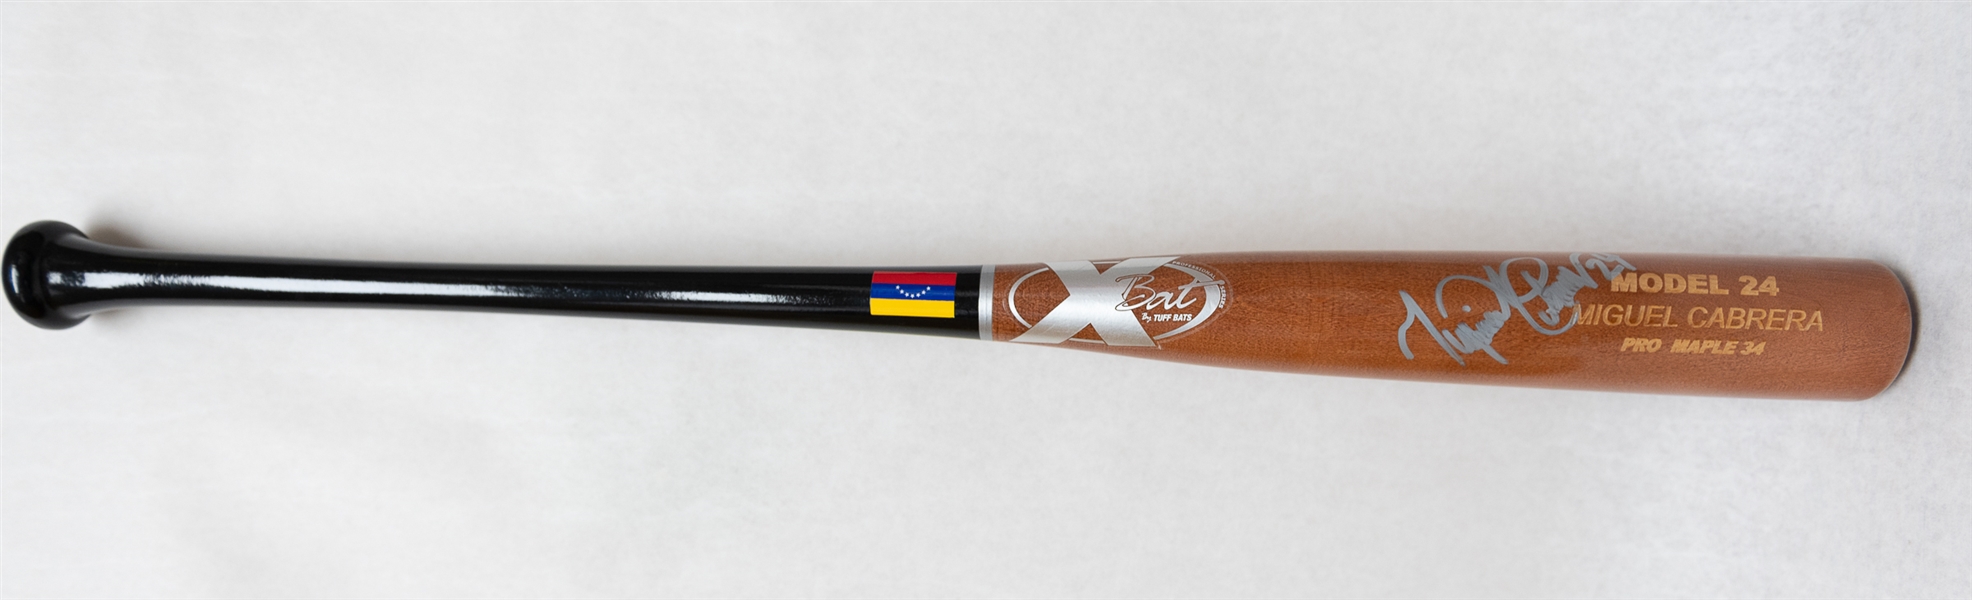 Miguel Cabrera Autographed X Bat Model 24 Baseball Bat (JSA Cert)